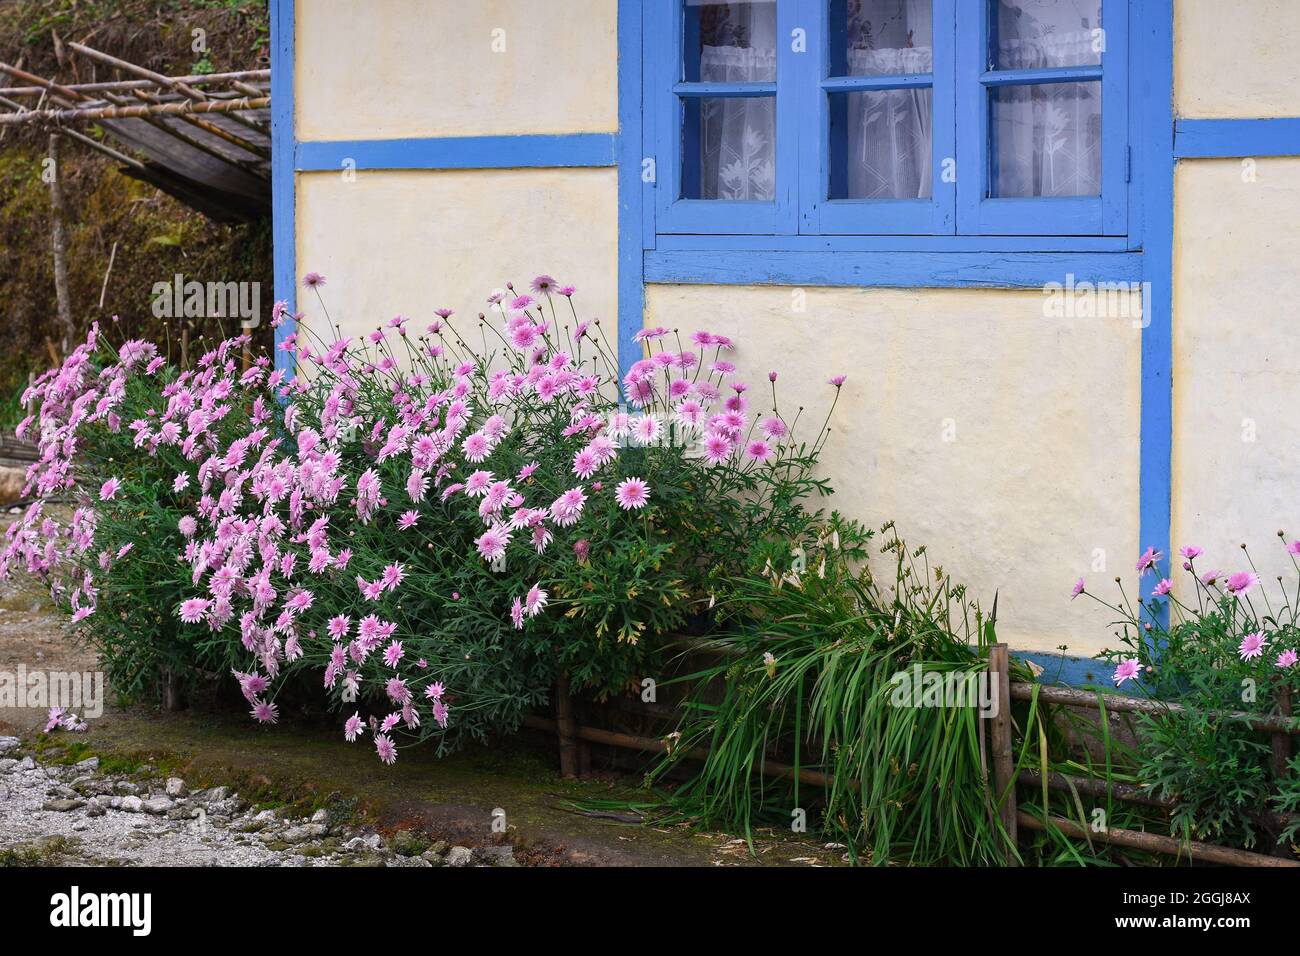 Schöne blühende rosa Argyranthemum frutescens vor der cremefarbenen Hütte Wand und blauem Fenster. Stockfoto